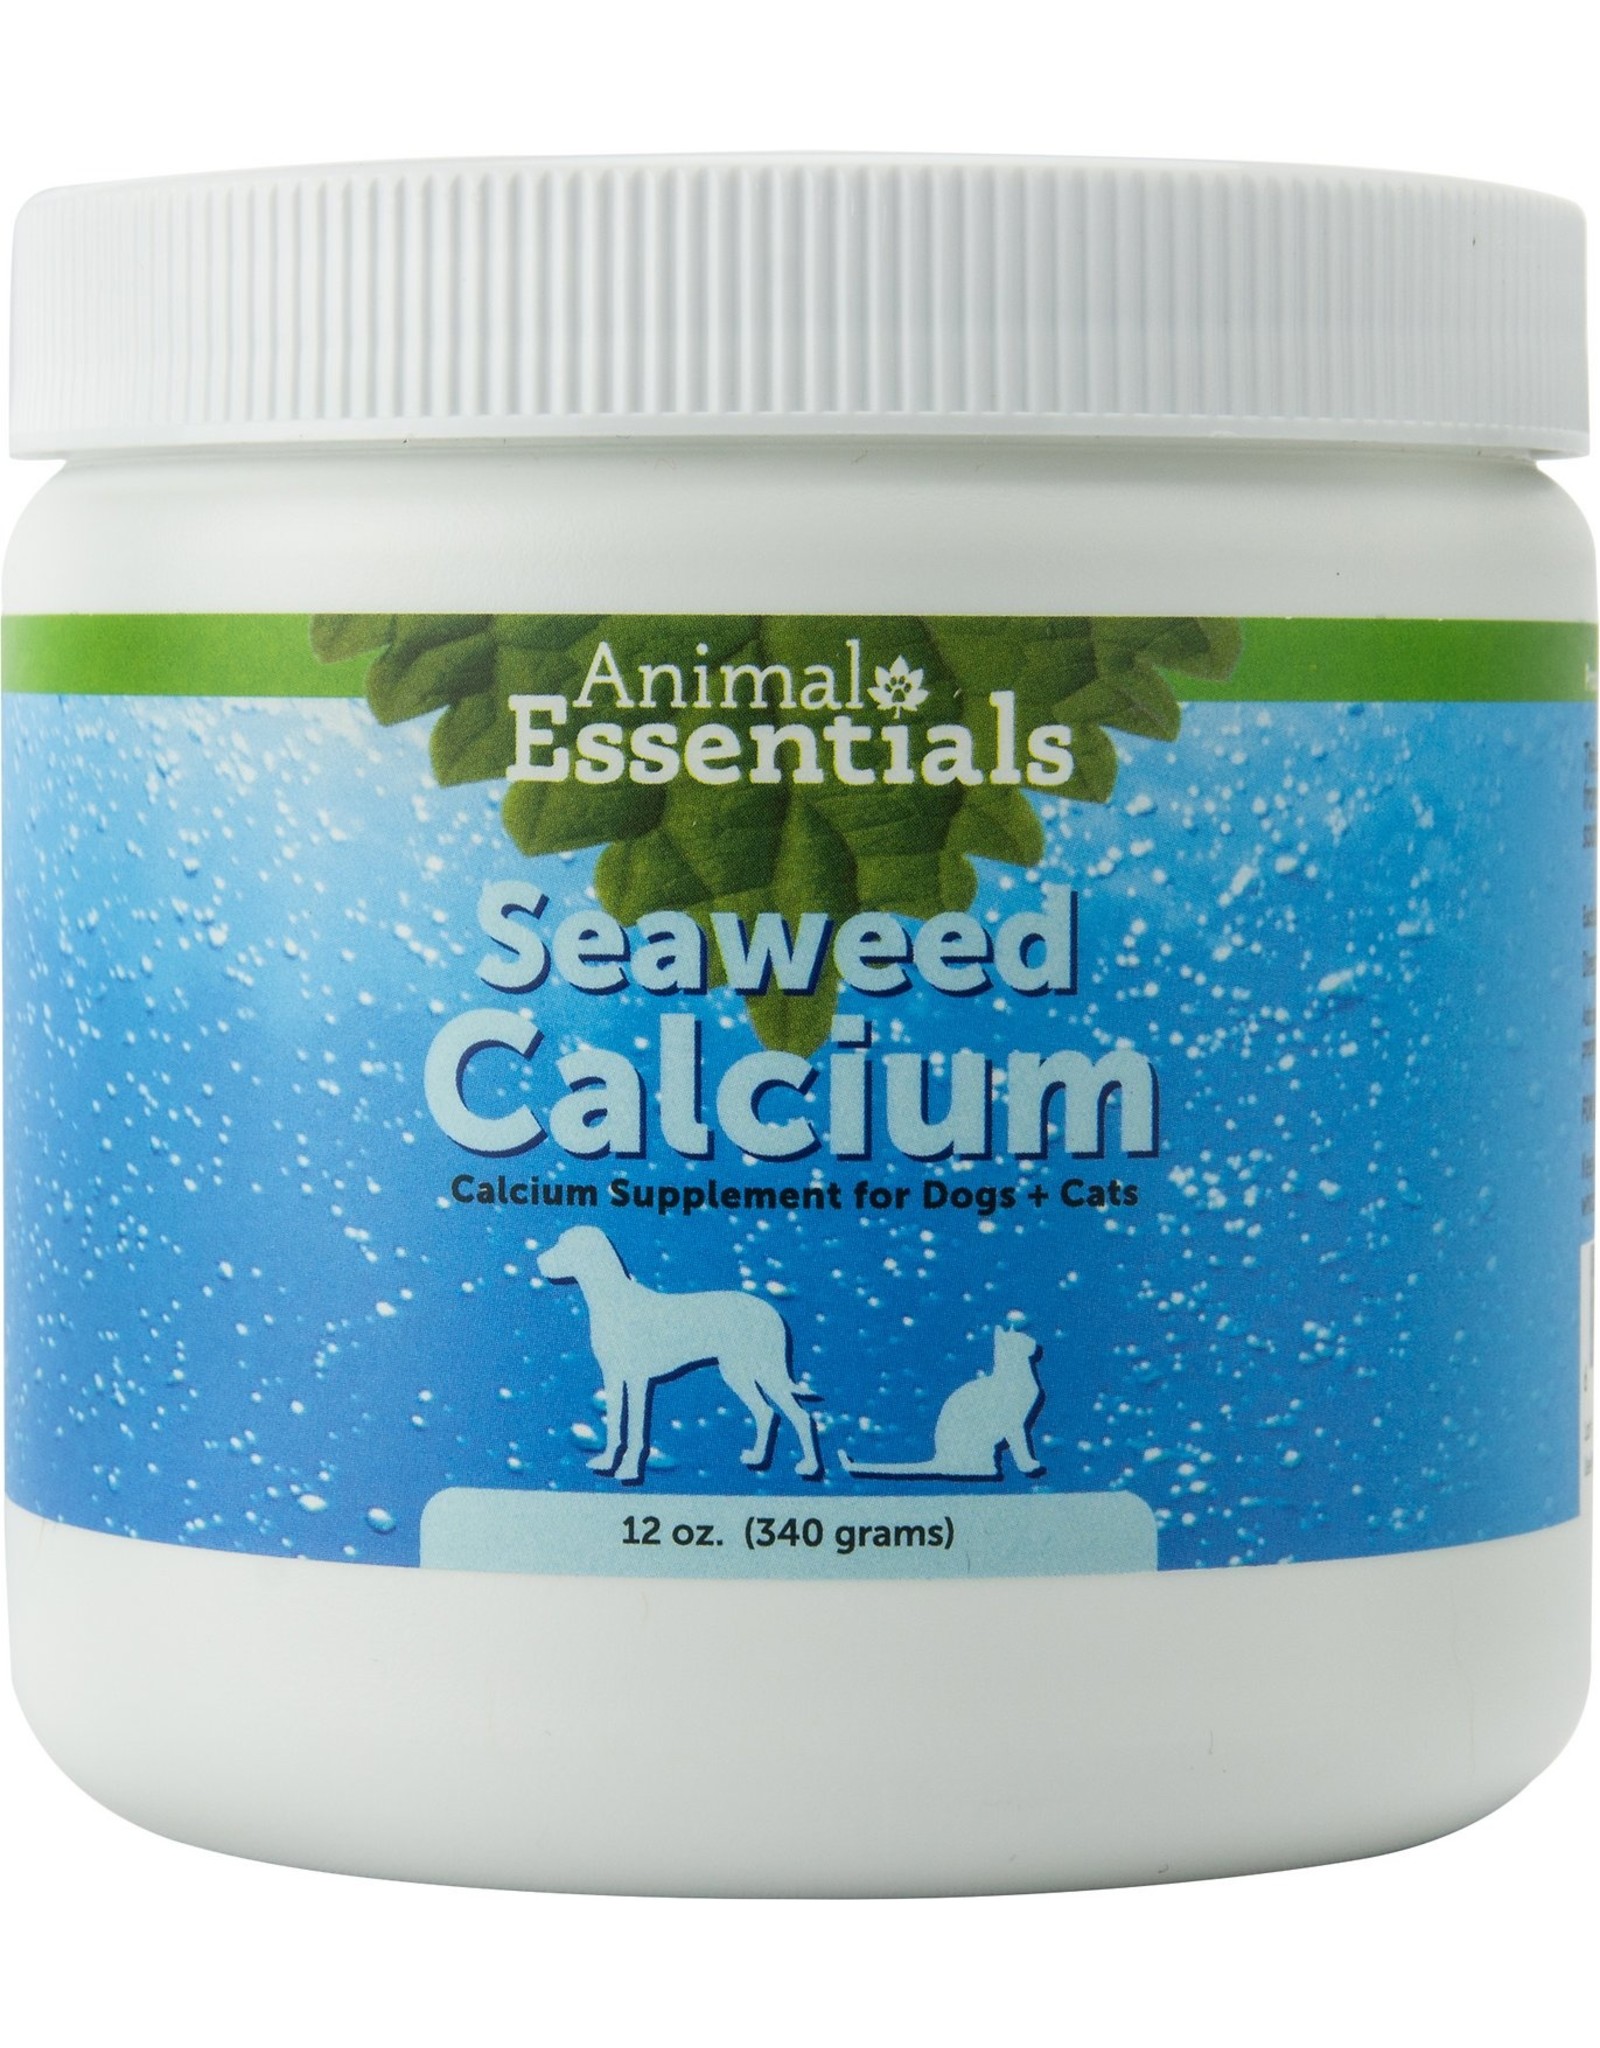 Animal Essentials ANIMAL ESSENTIALS SEAWEED CALCIUM SUPPLEMENT FOR DOGS & CATS 12OZ